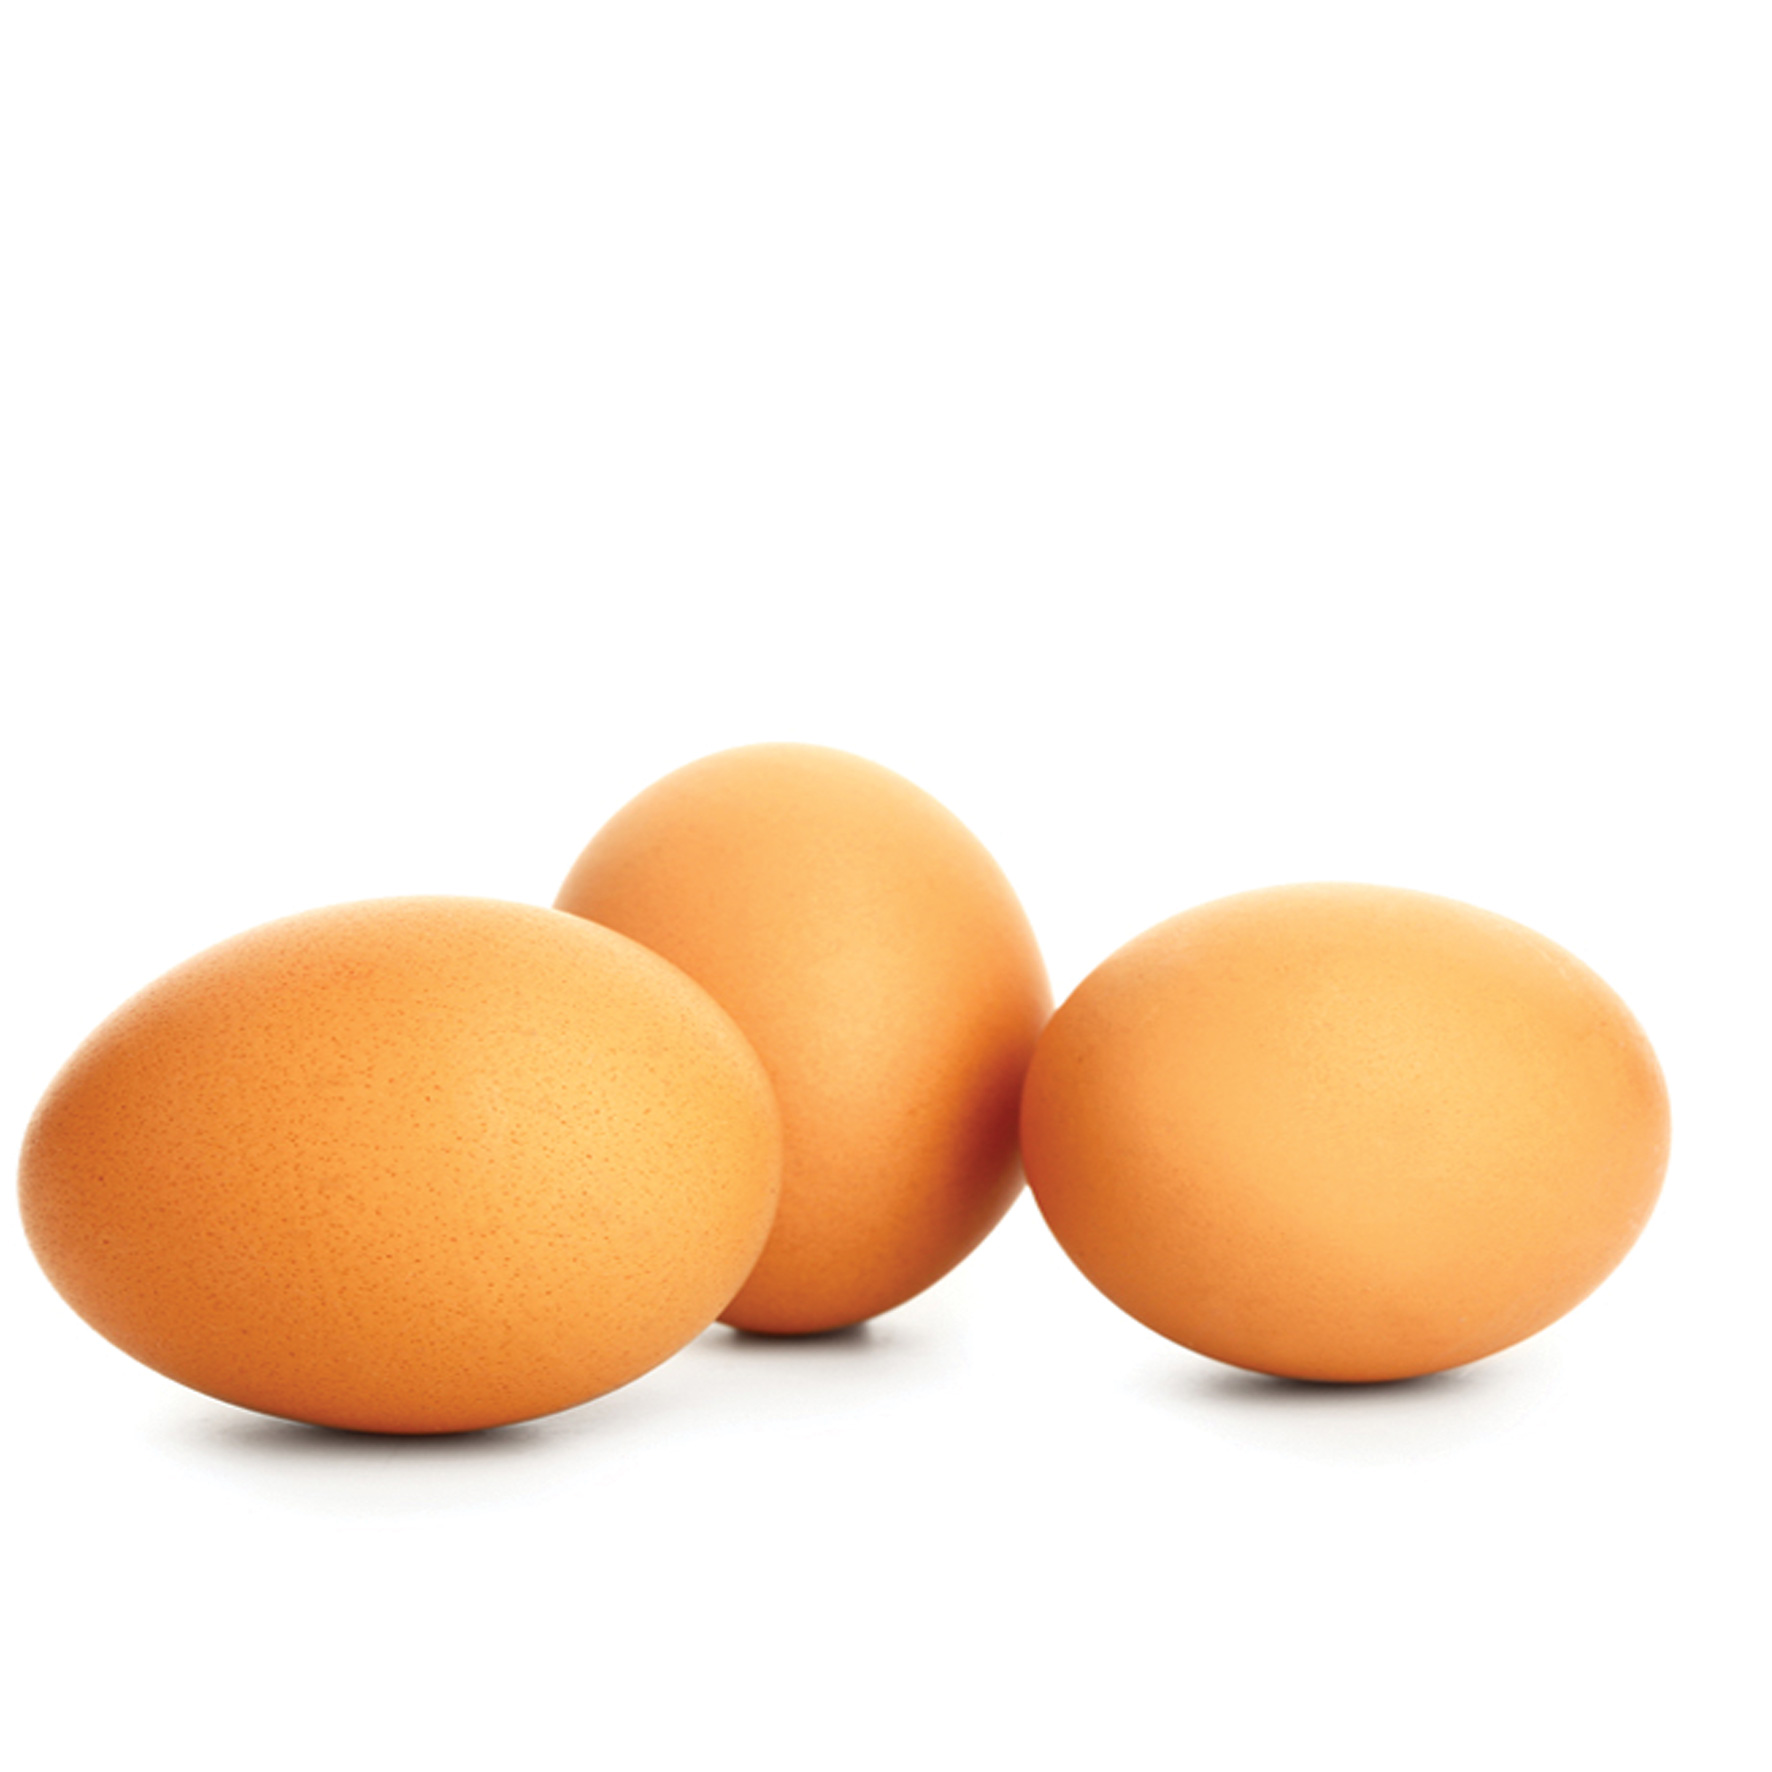 ביצים